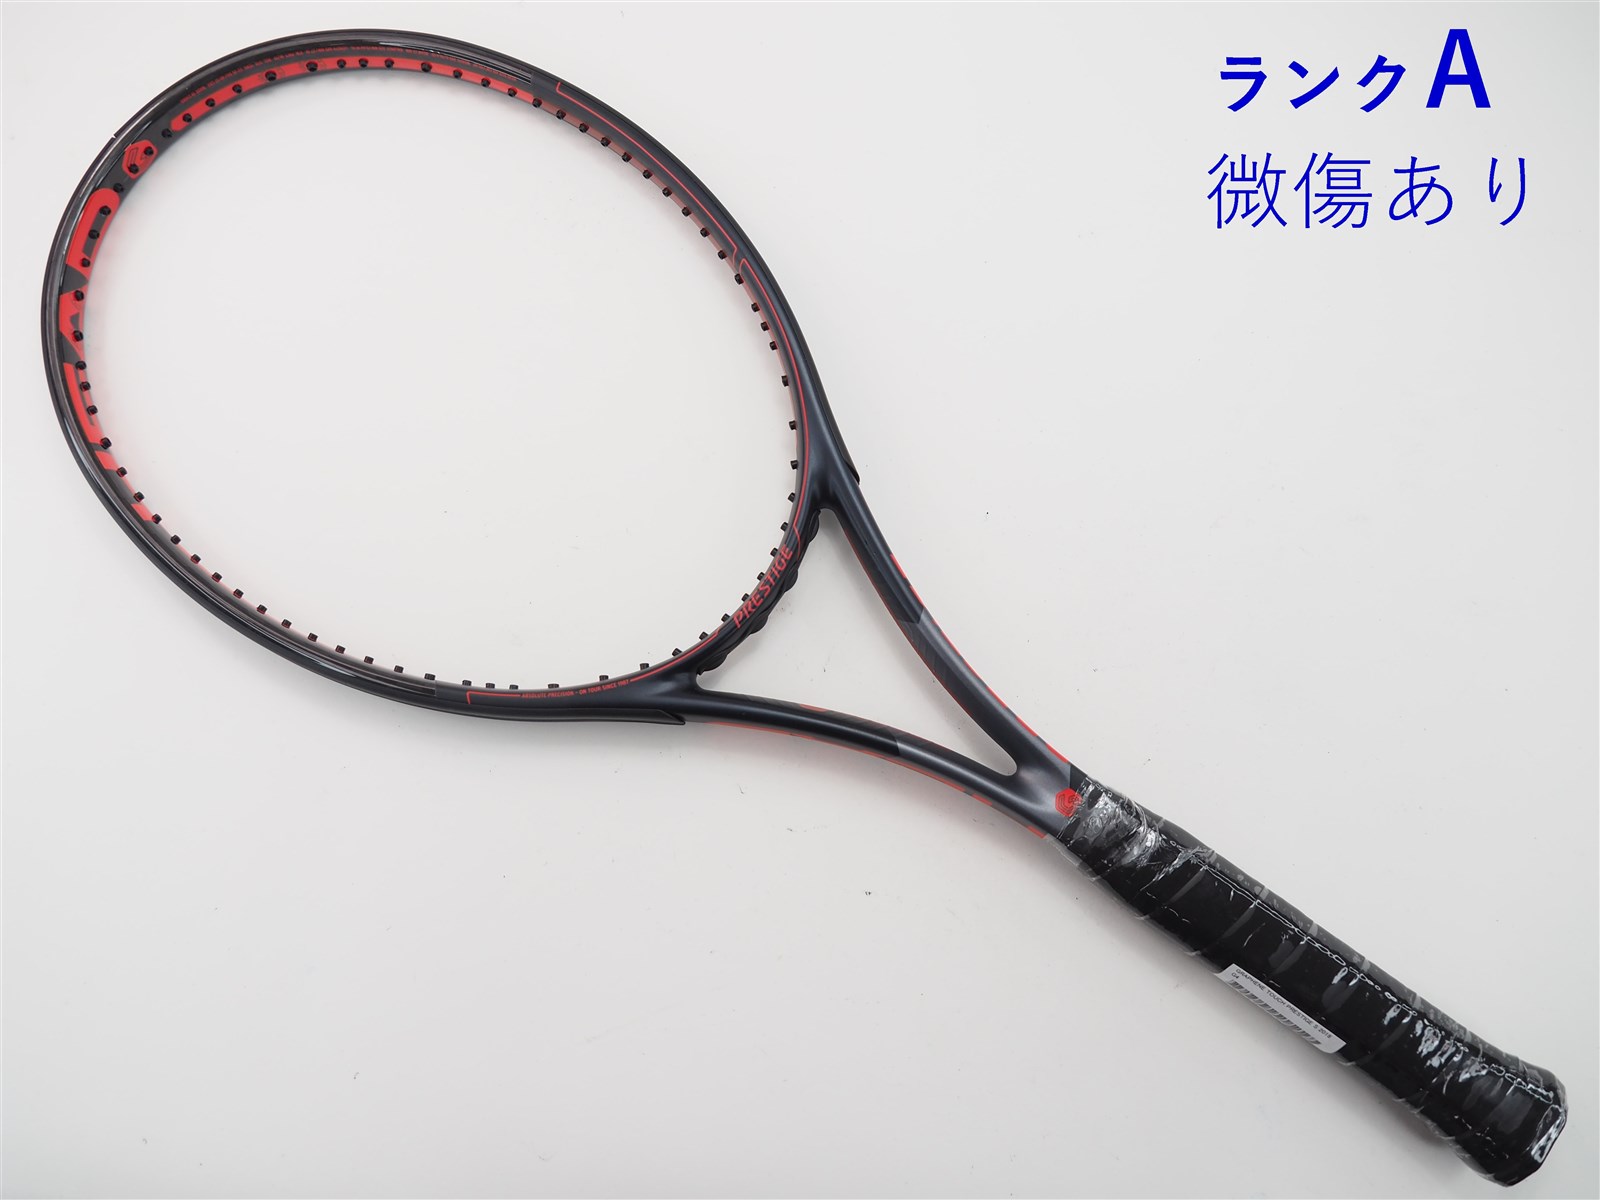 テニスラケット プリンス ファントム グラファイト 100 2020年モデル ...